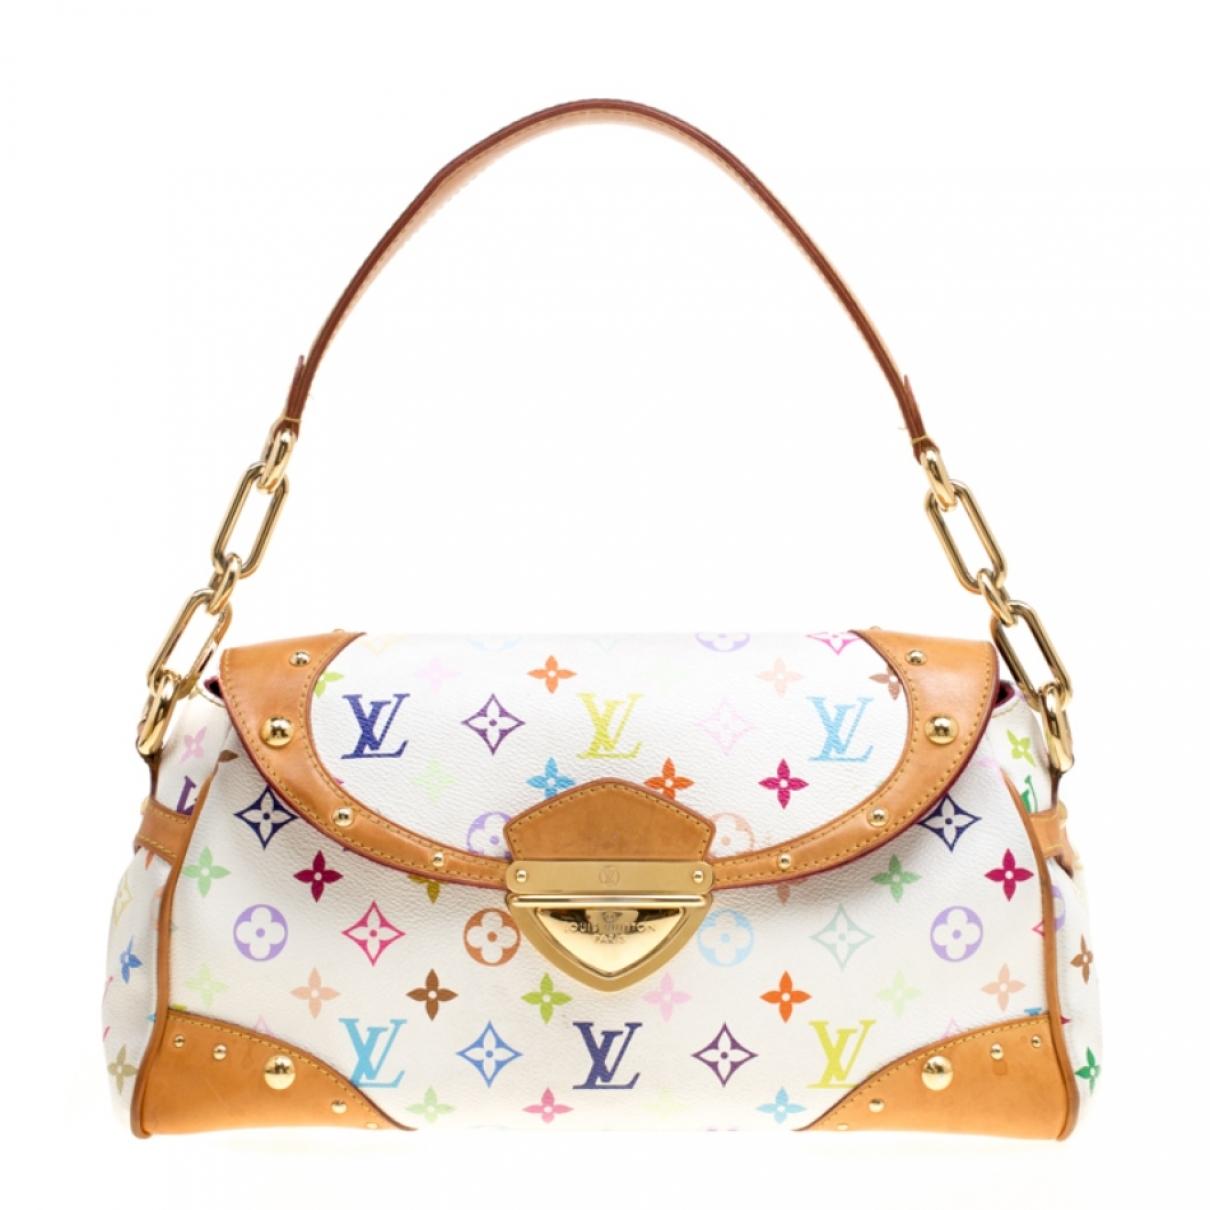 Lyst - Louis Vuitton Cloth Handbag